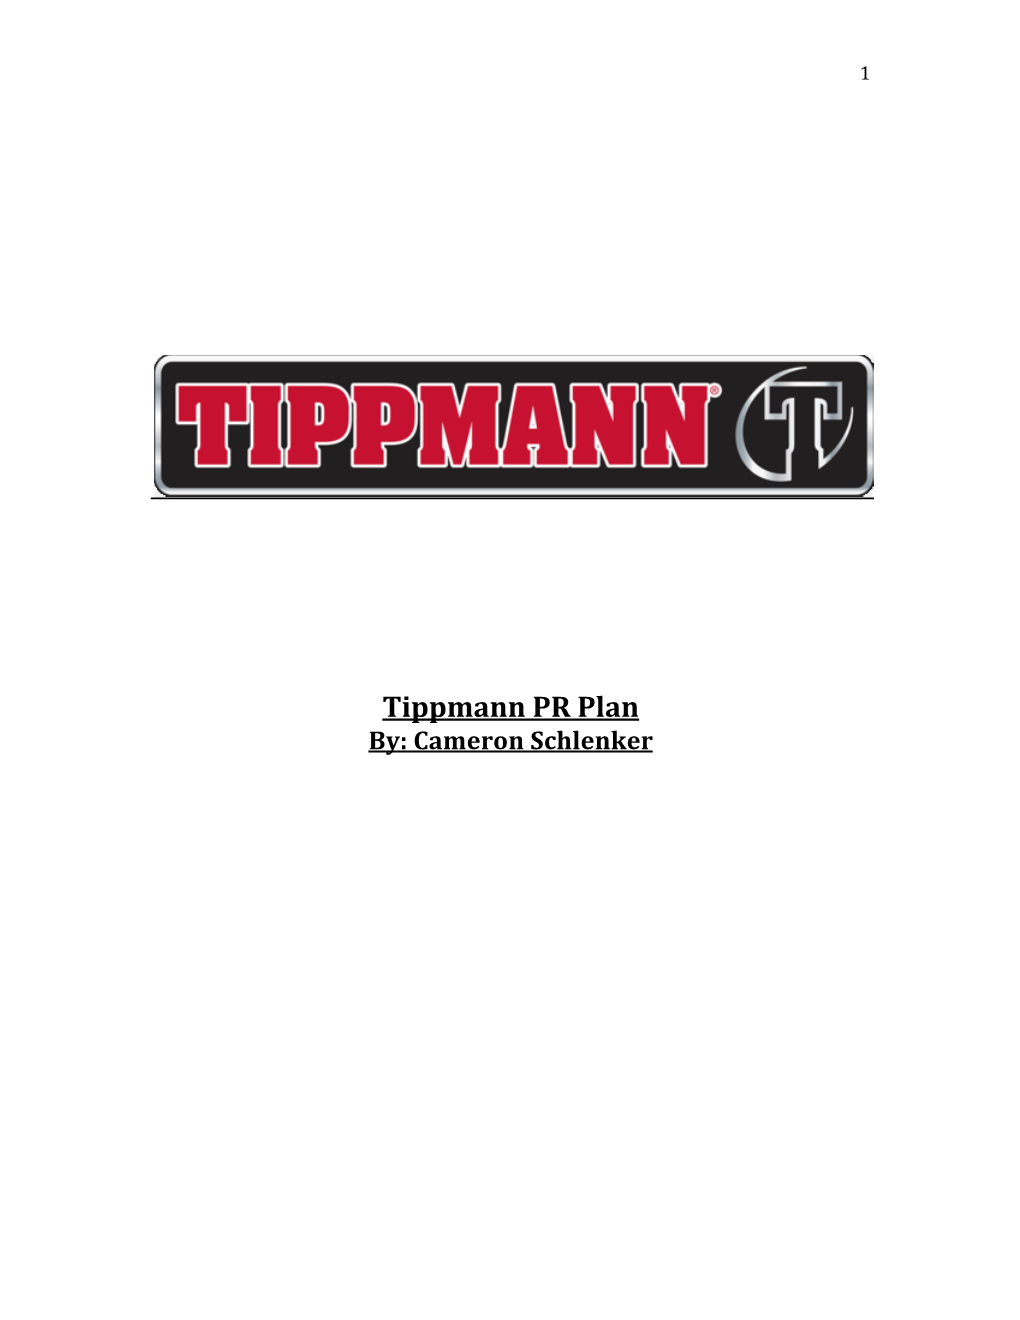 Tippmann PR Plan By: Cameron Schlenker